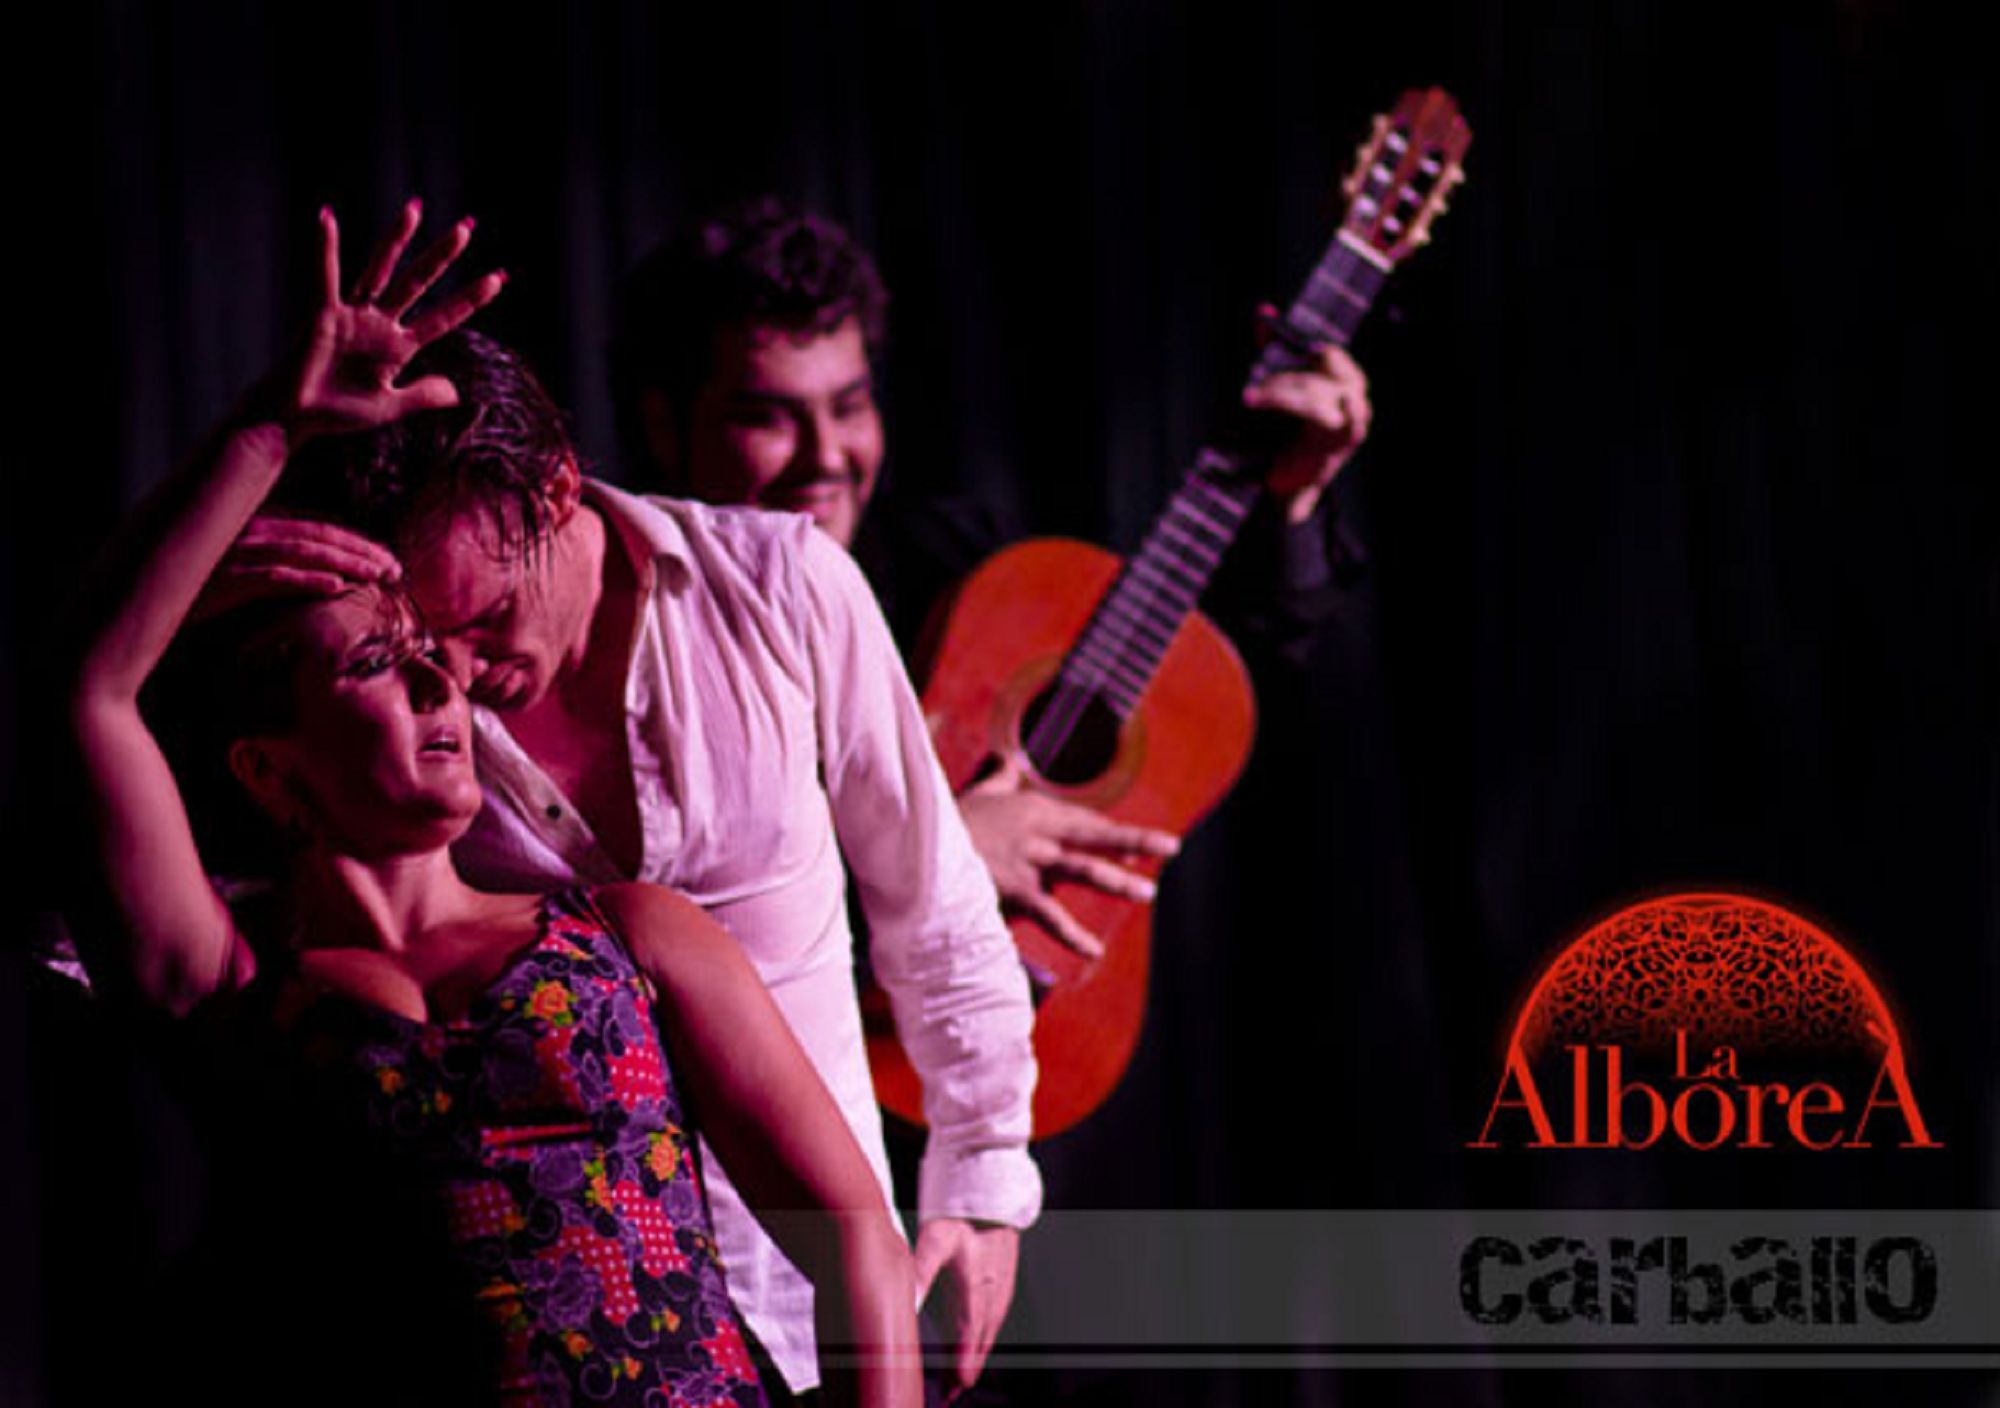 réserver acheter en ligne billets Spectacle flamenco à Grenade tablao La Alboreá